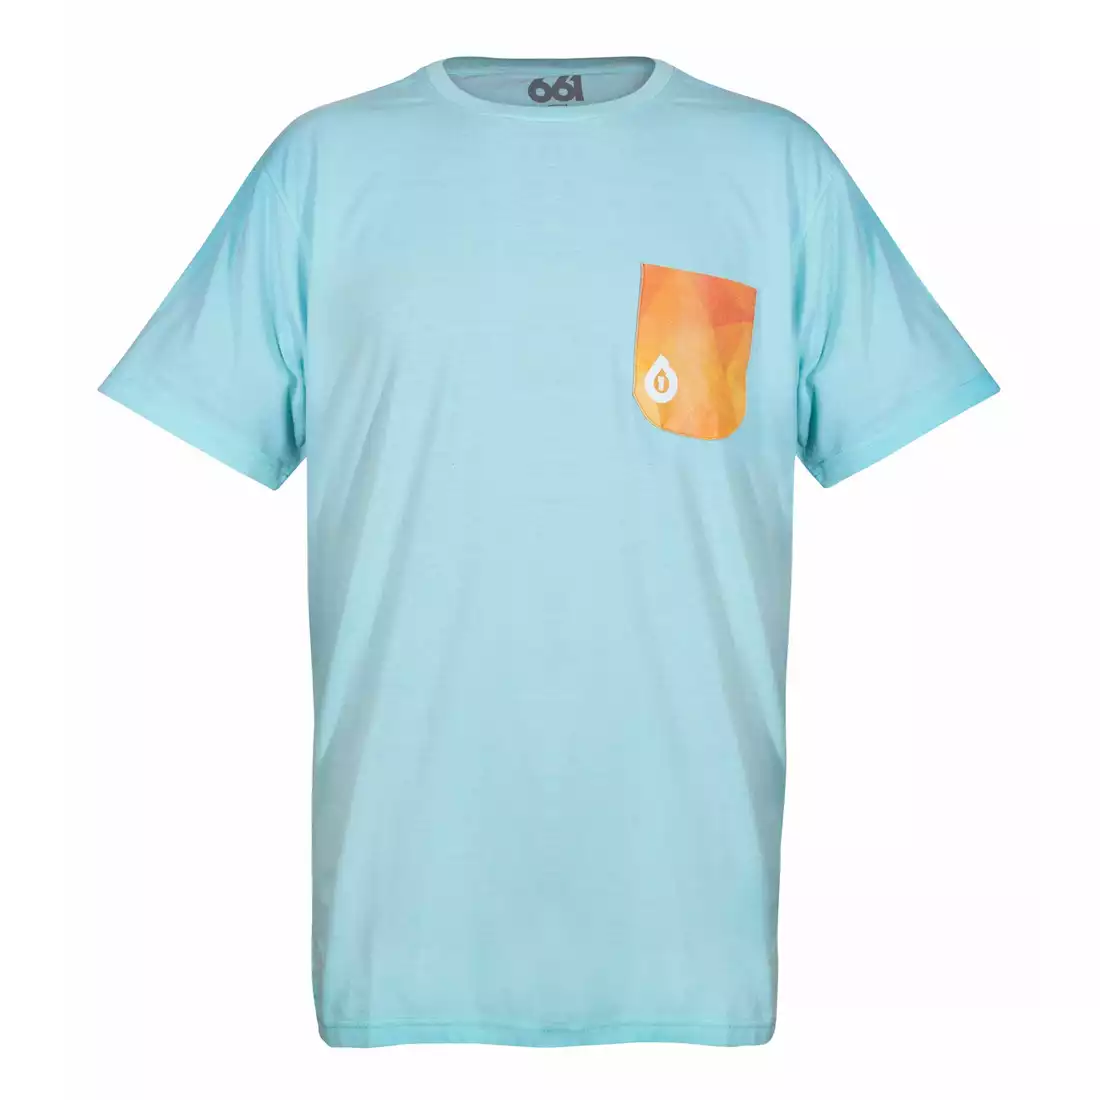 661 GEO POCKET Tee Pánské tričko, modrý